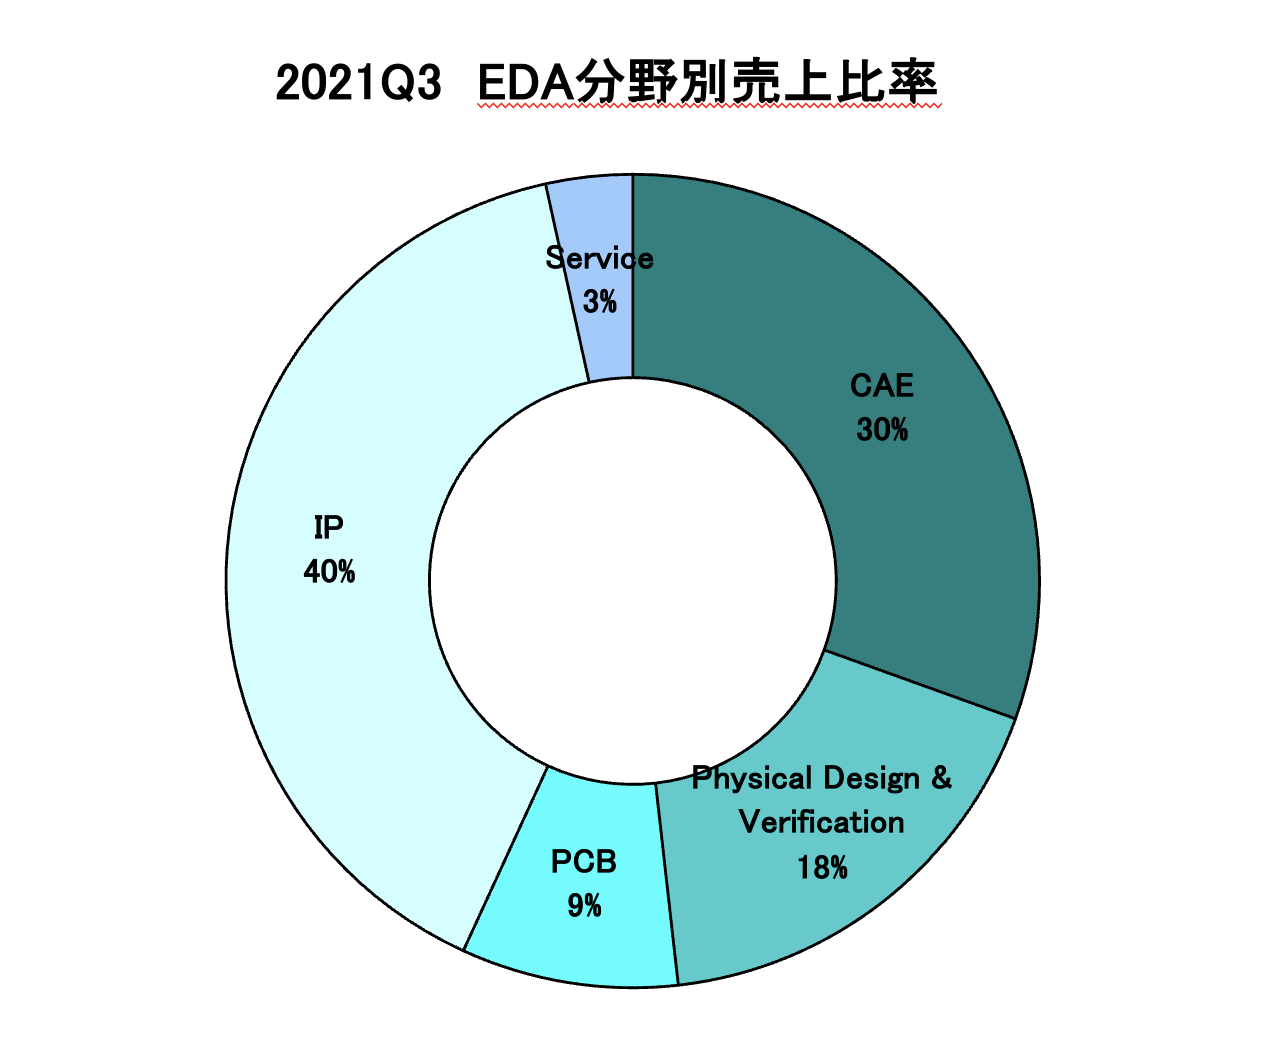 https://www.eda-express.com/%E3%82%B9%E3%82%AF%E3%83%AA%E3%83%BC%E3%83%B3%E3%82%B7%E3%83%A7%E3%83%83%E3%83%88%202022-01-18%2010.24.40.png